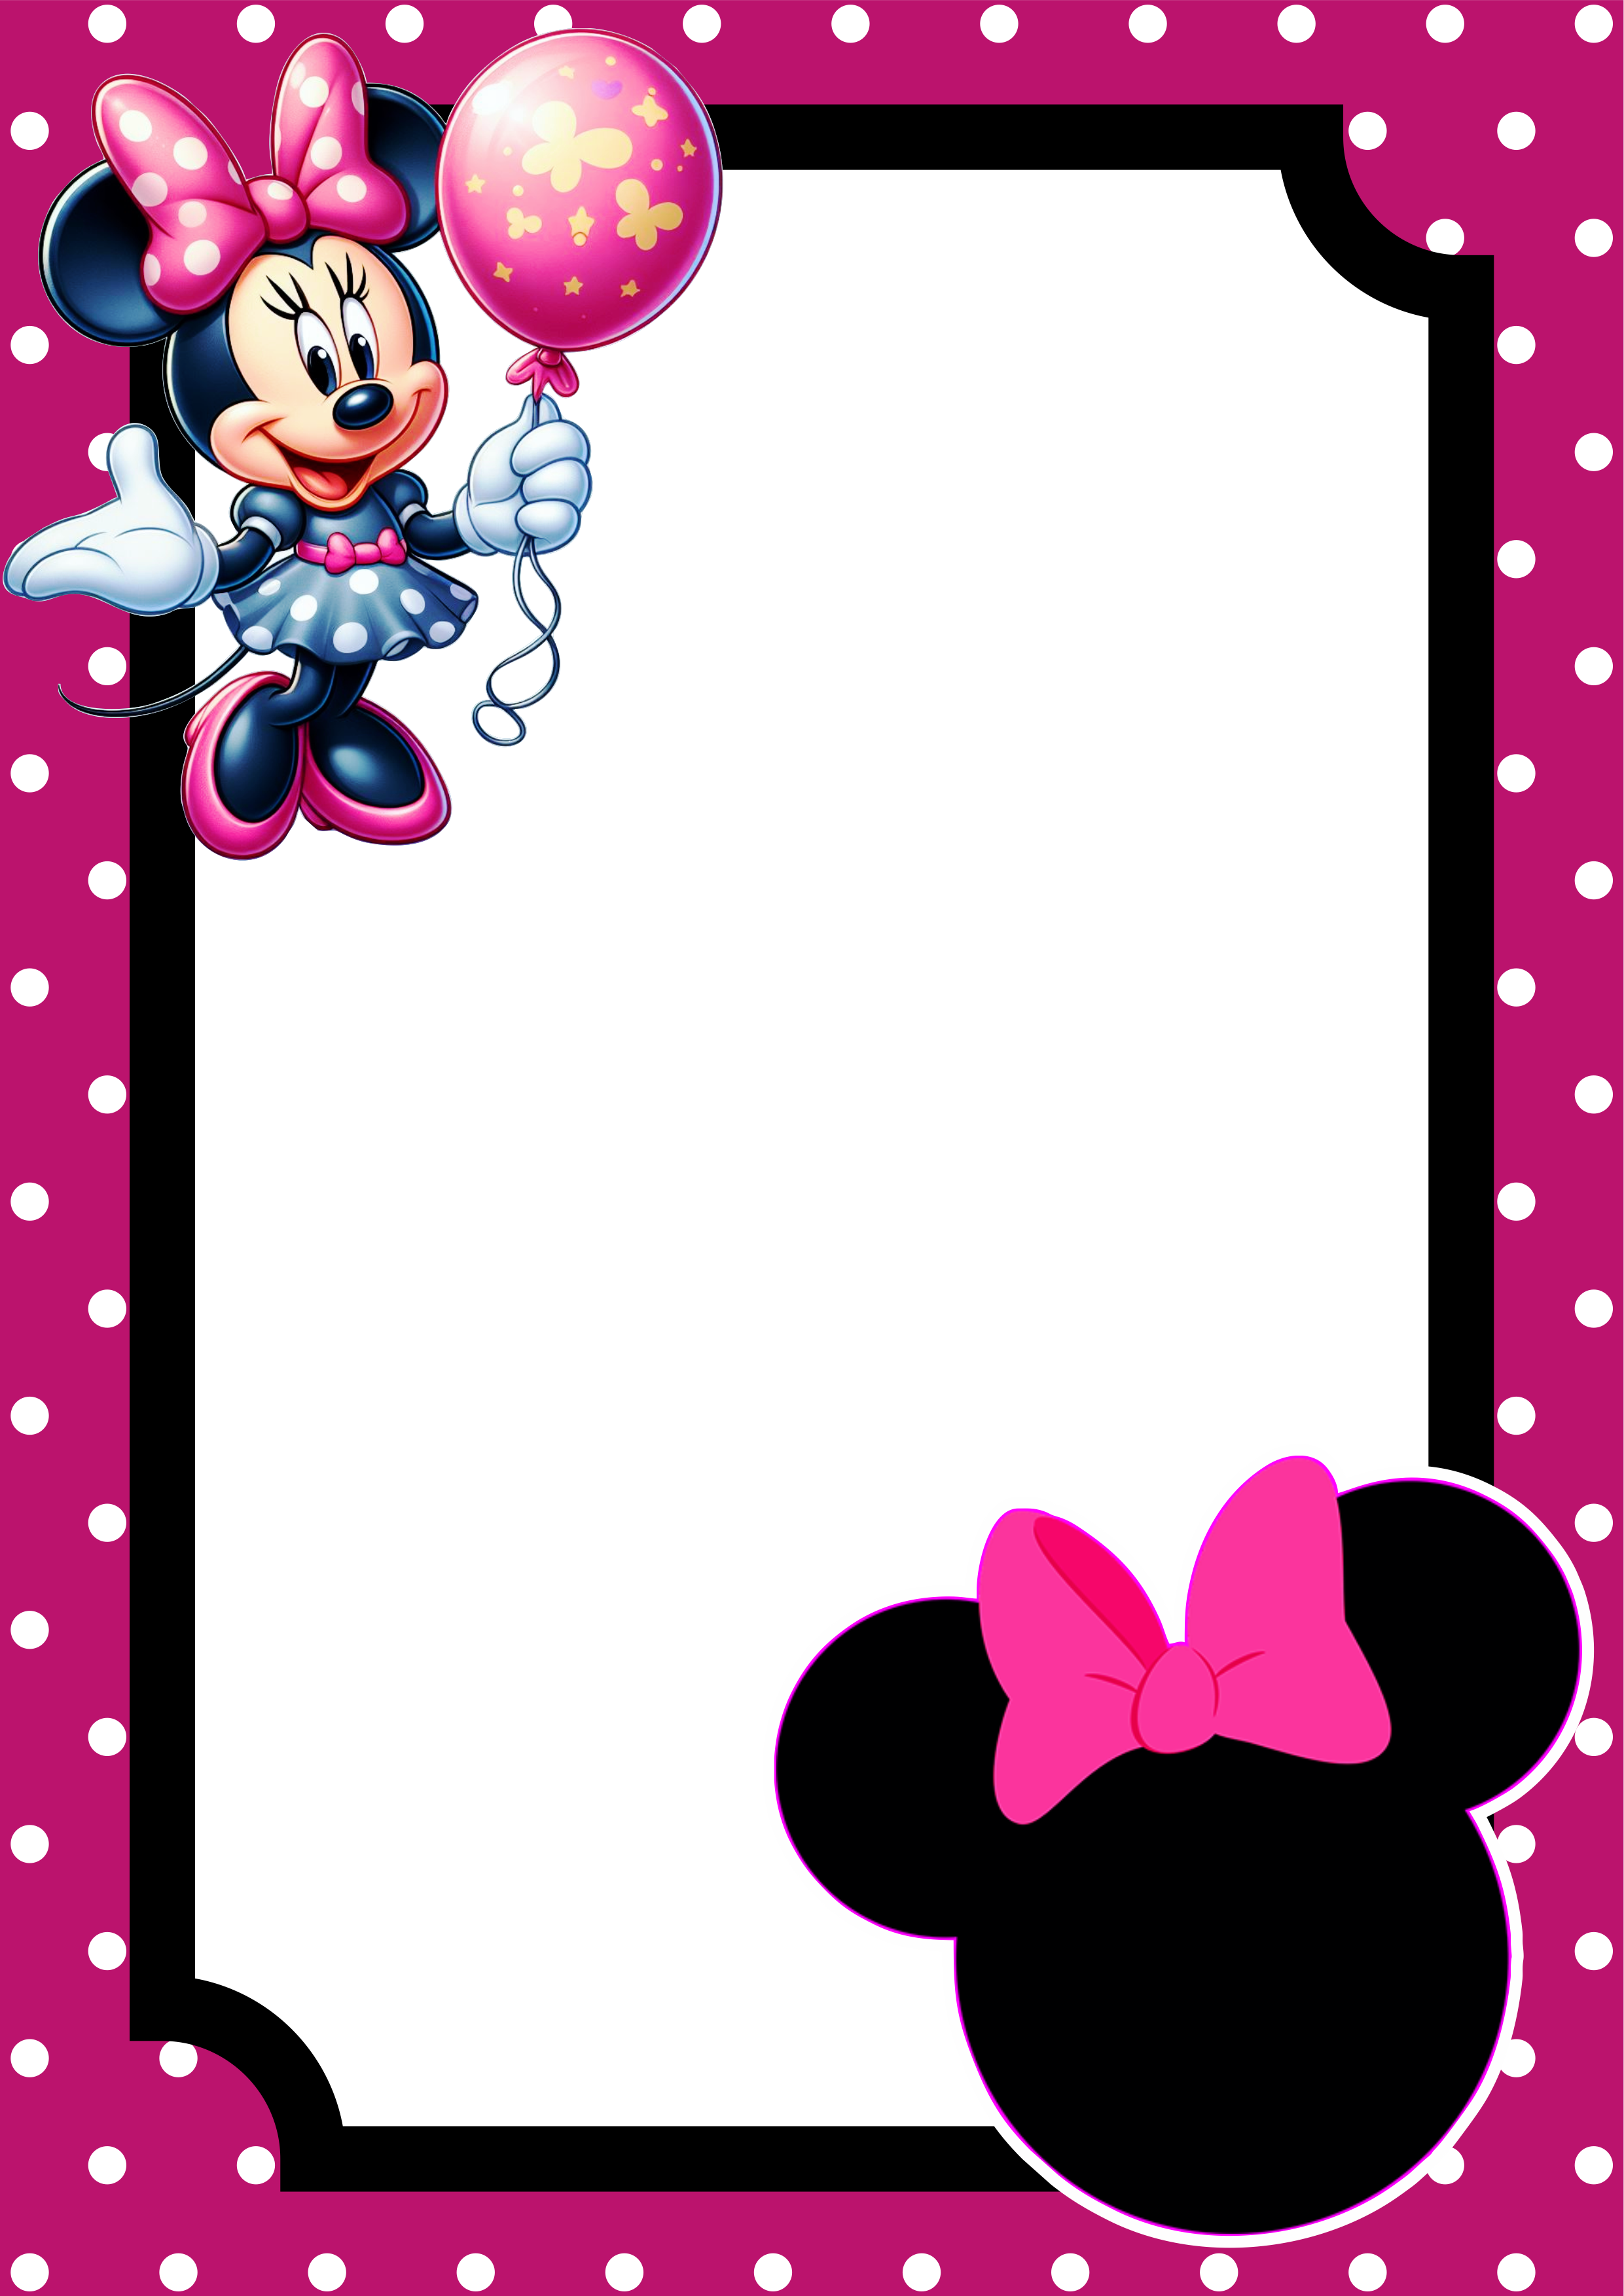 Convite virtual Minnie rosa molde pronto para editar e imprimir festa aniversário infantil Disney renda extra festinha png